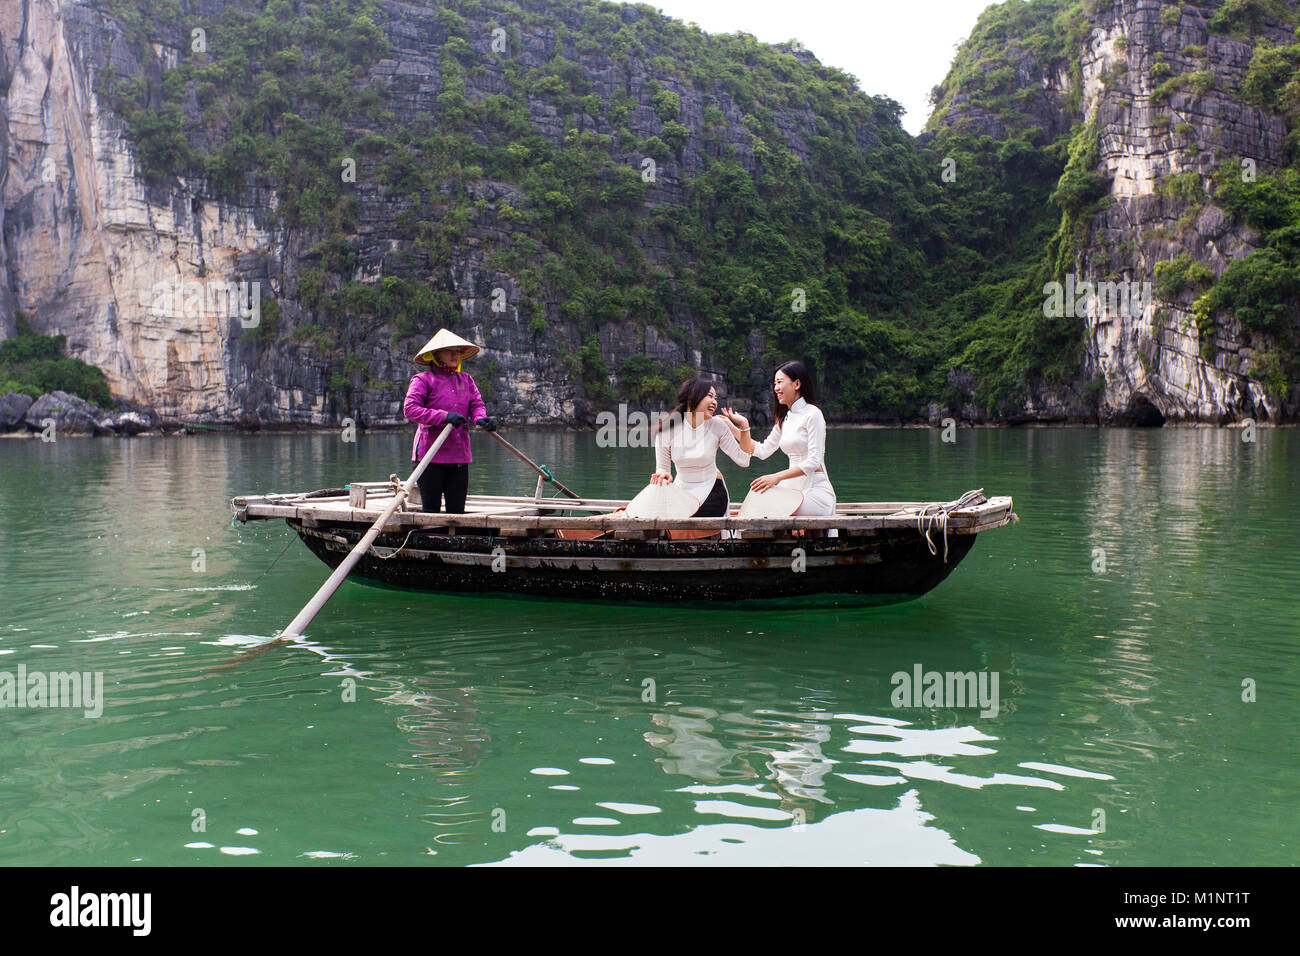 Giovani donne touring su una barca a remi (sampan) nella baia di Halong, Vietnam. Le isolette di calcare e di formazioni rocciose sono diventati un'UNESCO area protetta. Foto Stock